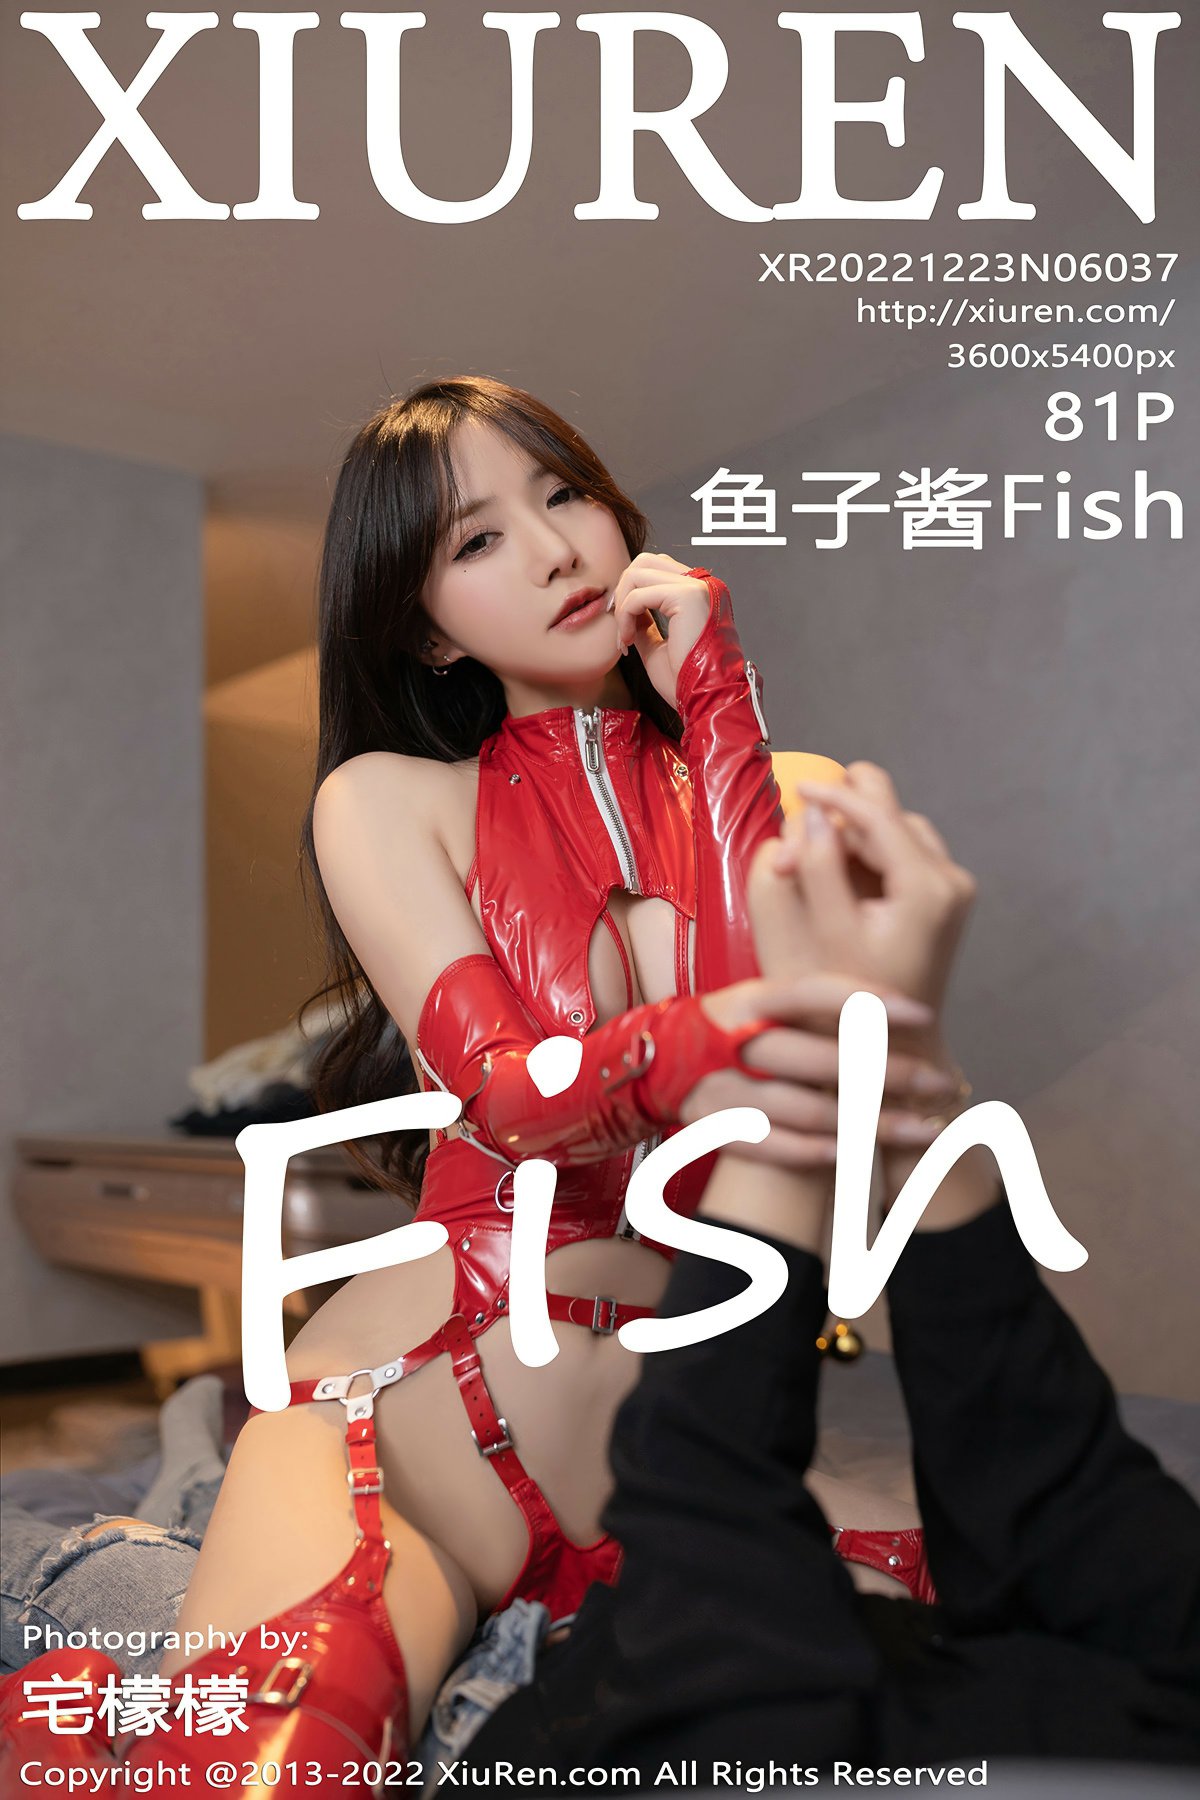 [XiuRen秀人网] 2022.12.23 No.6037 鱼子酱Fish [81+1P]